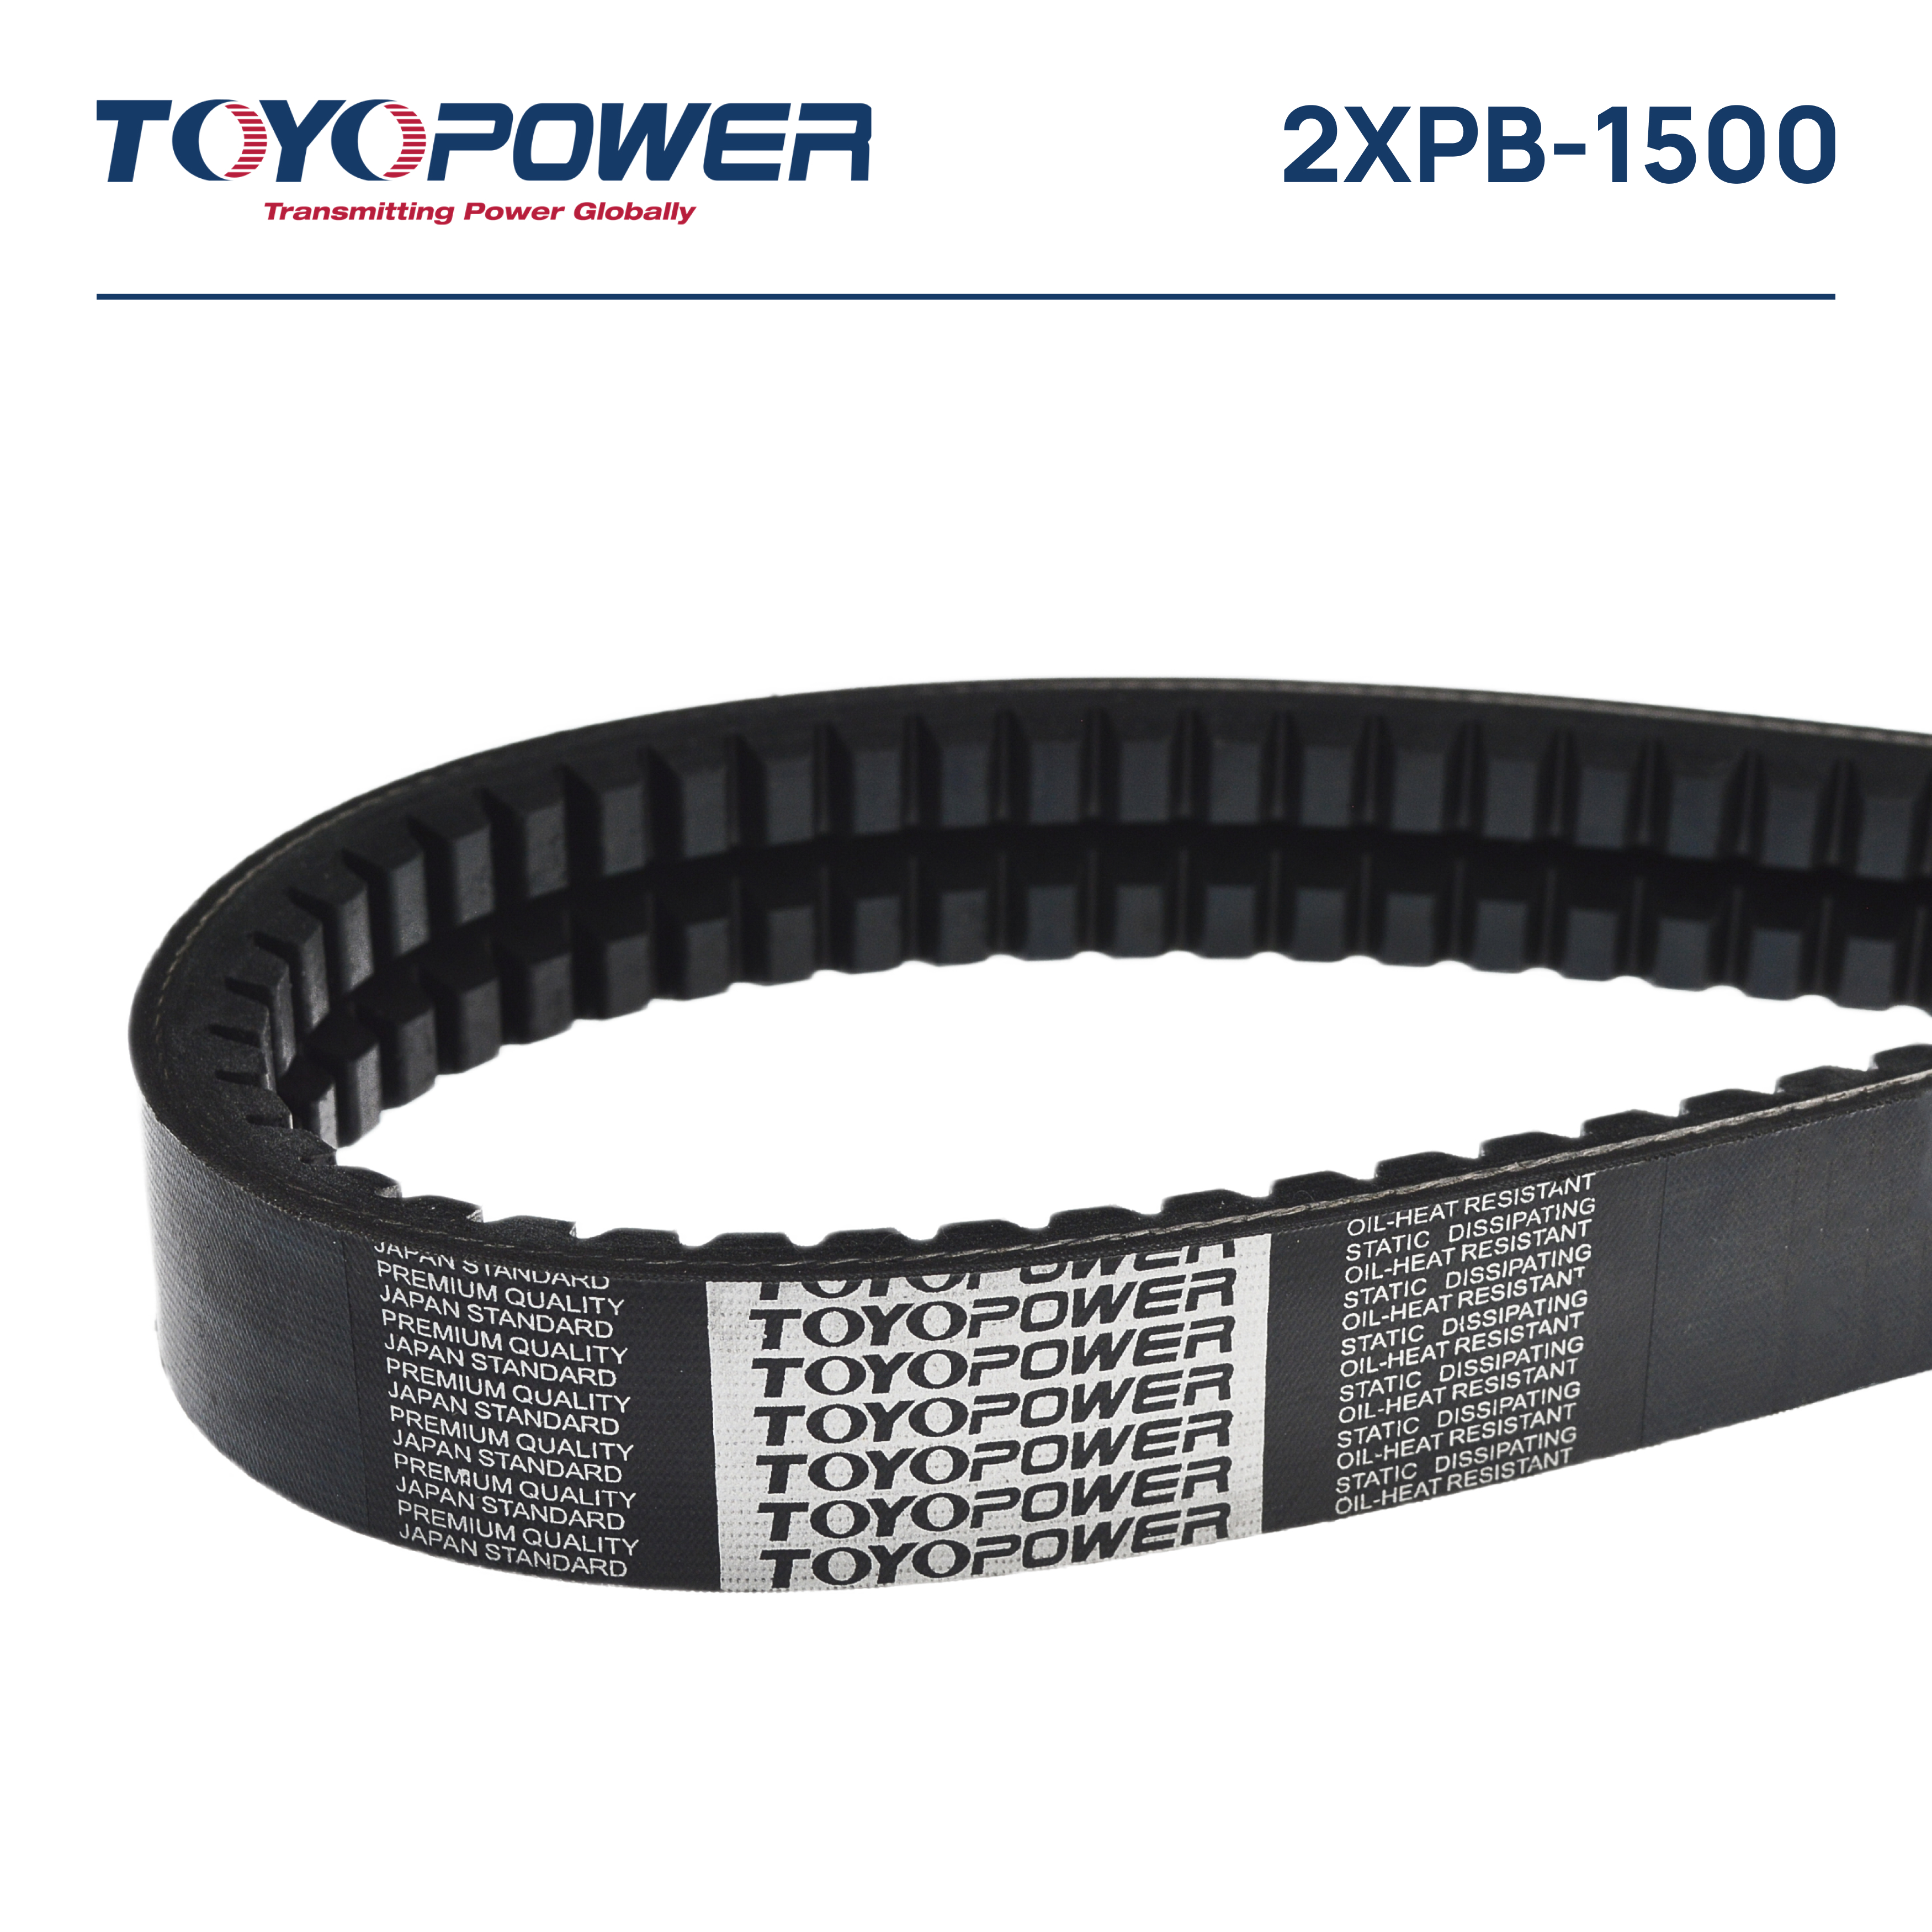 Ремень 2xpb-1500 Lp epdm - Toyopower 2XPB1500